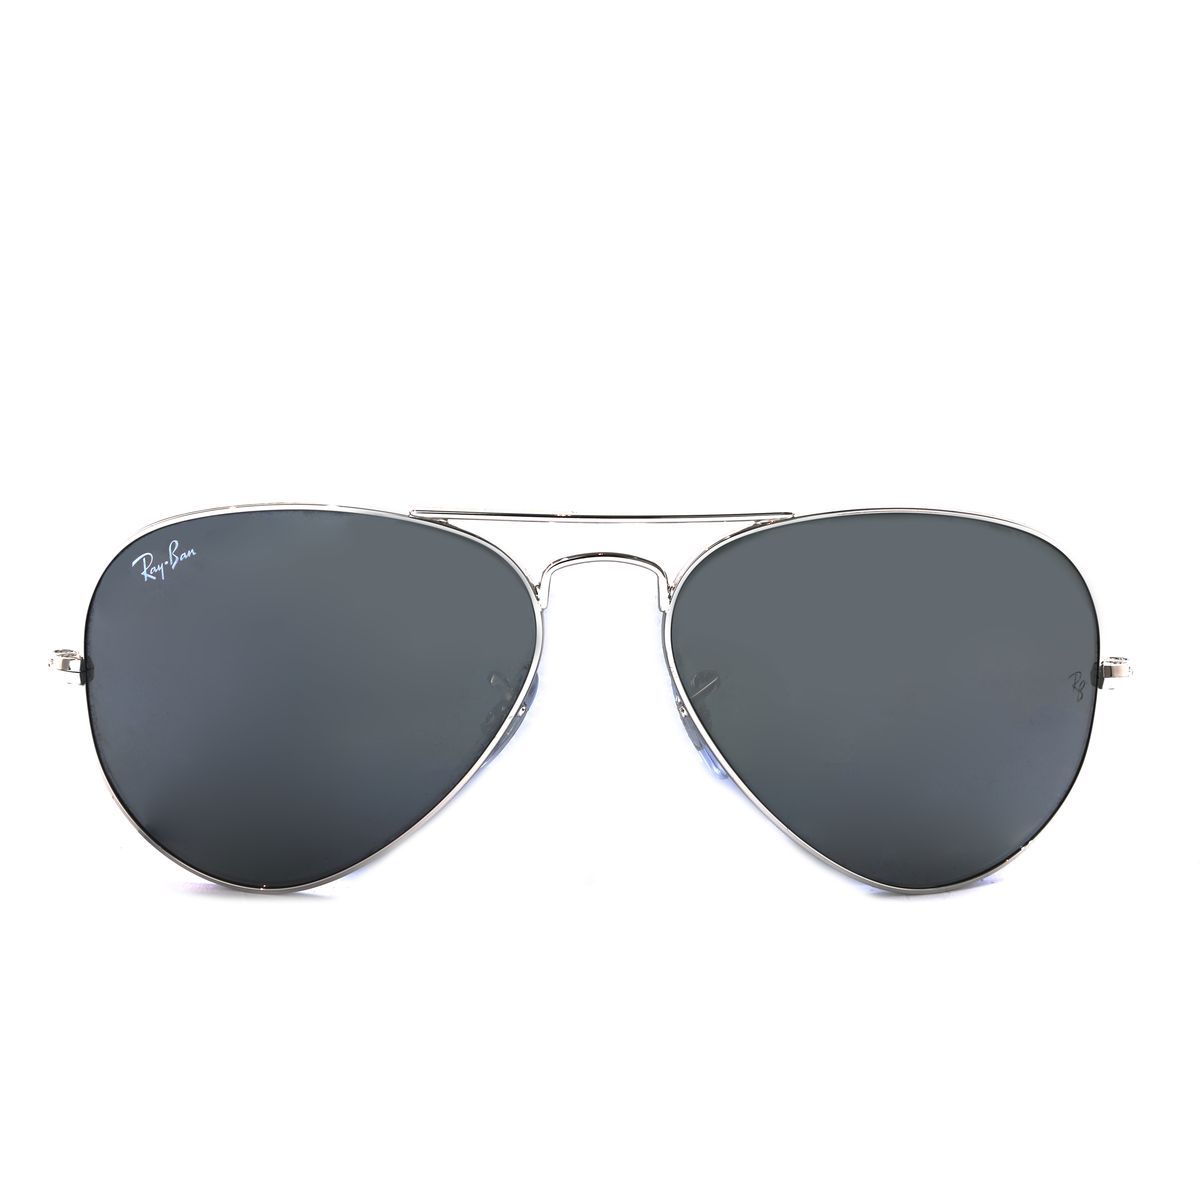 RB3025 Pilot Sunglasses 3275 - size 55